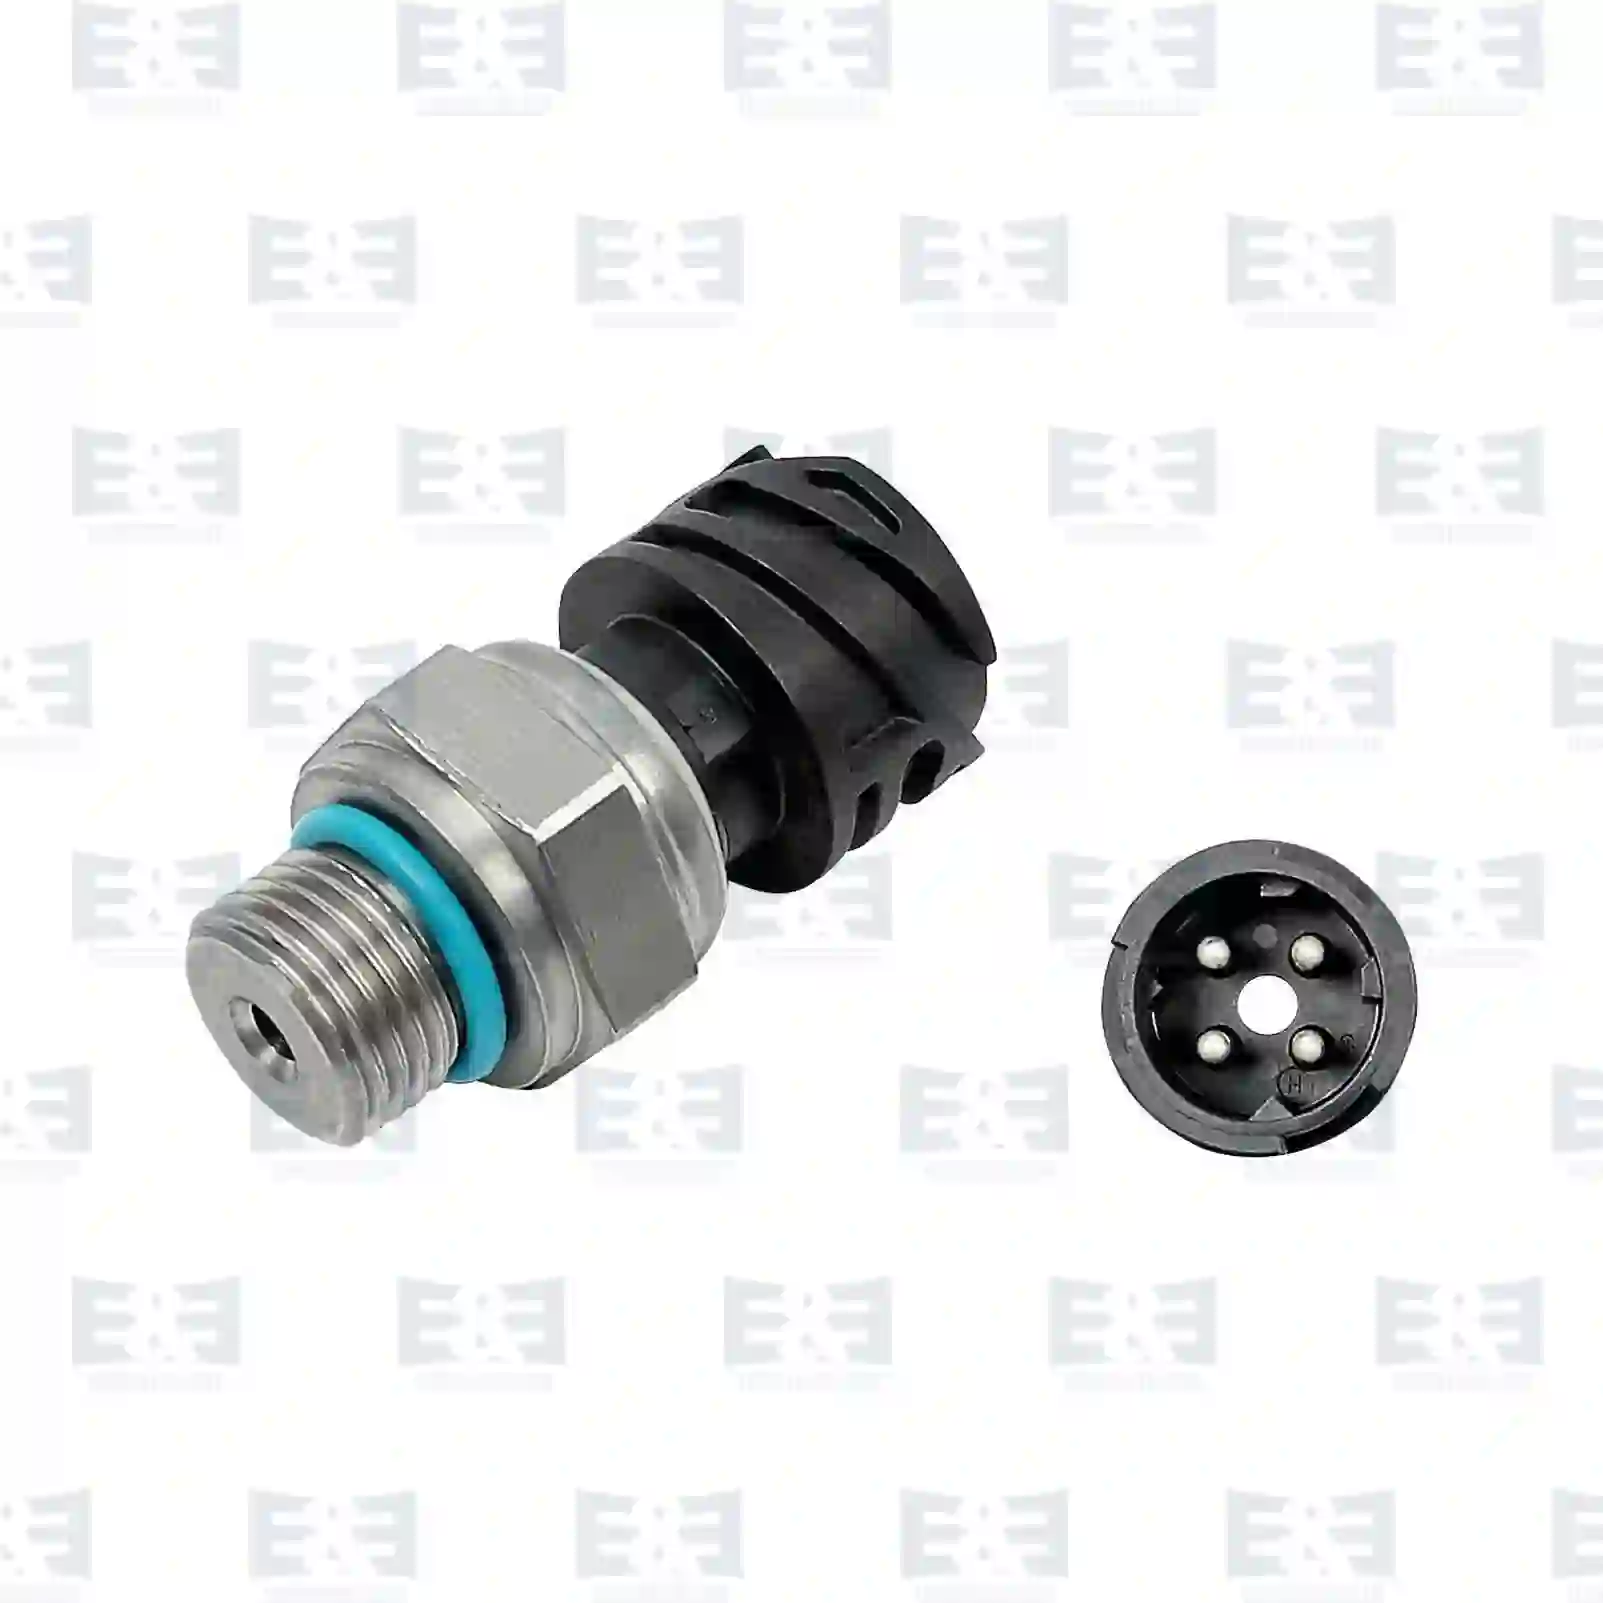 Pressure sensor, 2E2209684, 7420796740, 7420898038, 7421302639, 7421634021, 7422899626, 20796740, 20898038, 21302639, 21634021, 22899626, ZG20720-0008 ||  2E2209684 E&E Truck Spare Parts | Truck Spare Parts, Auotomotive Spare Parts Pressure sensor, 2E2209684, 7420796740, 7420898038, 7421302639, 7421634021, 7422899626, 20796740, 20898038, 21302639, 21634021, 22899626, ZG20720-0008 ||  2E2209684 E&E Truck Spare Parts | Truck Spare Parts, Auotomotive Spare Parts